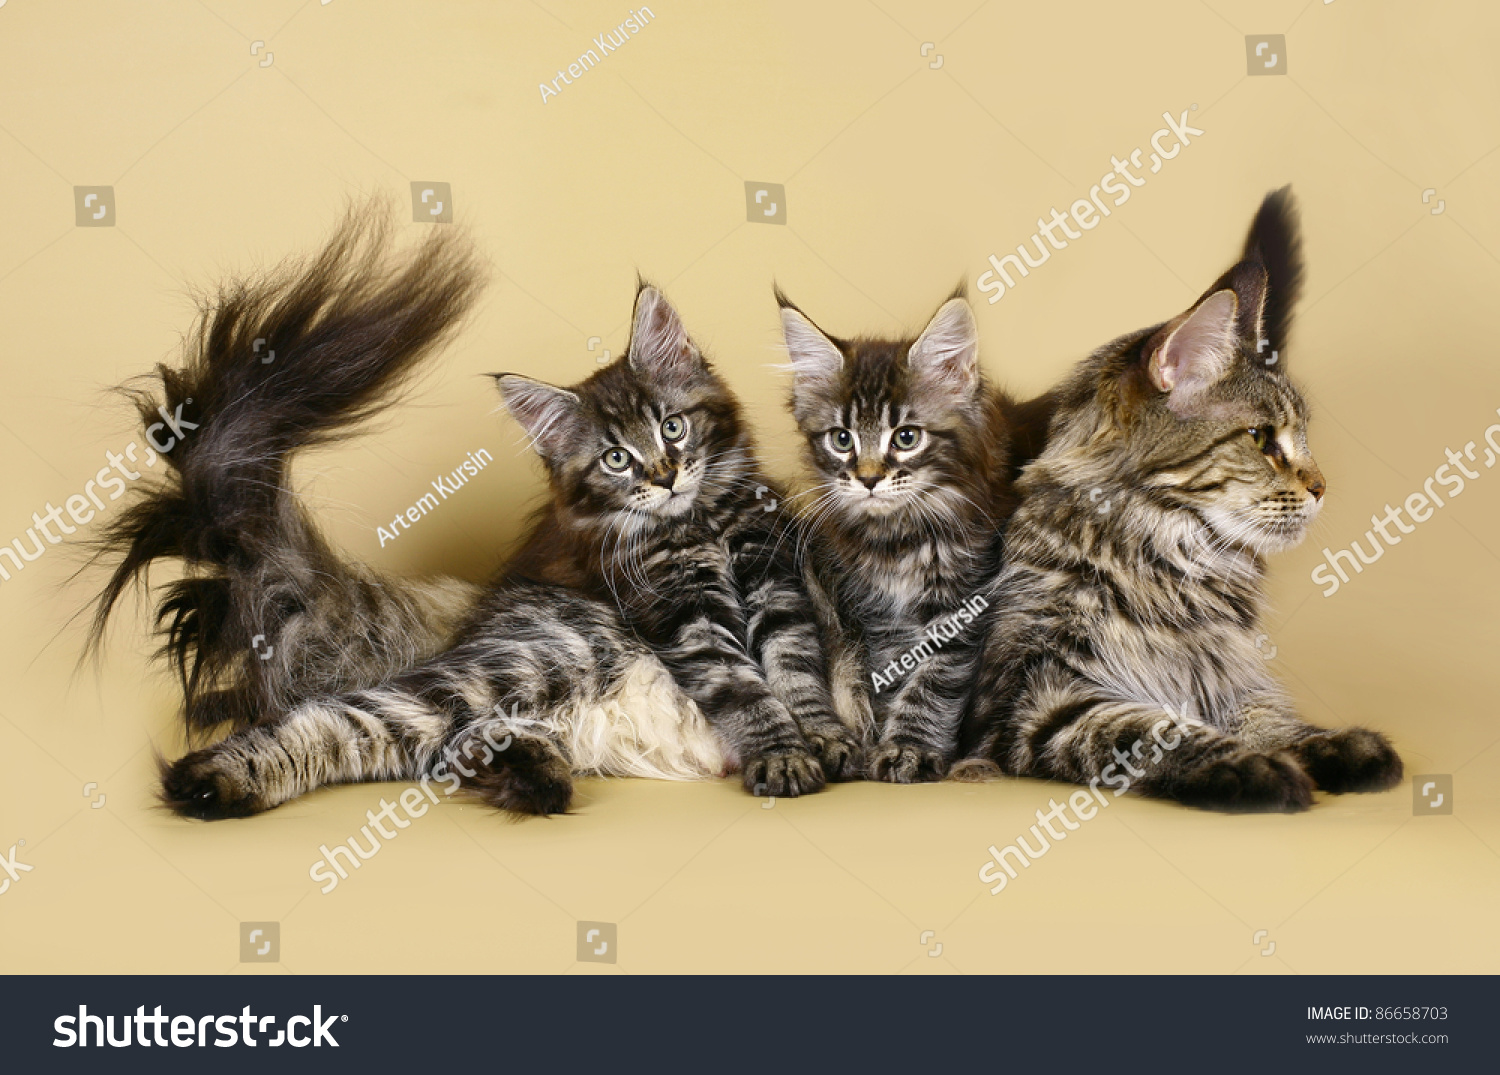 Кошка Мейн кун с котятами